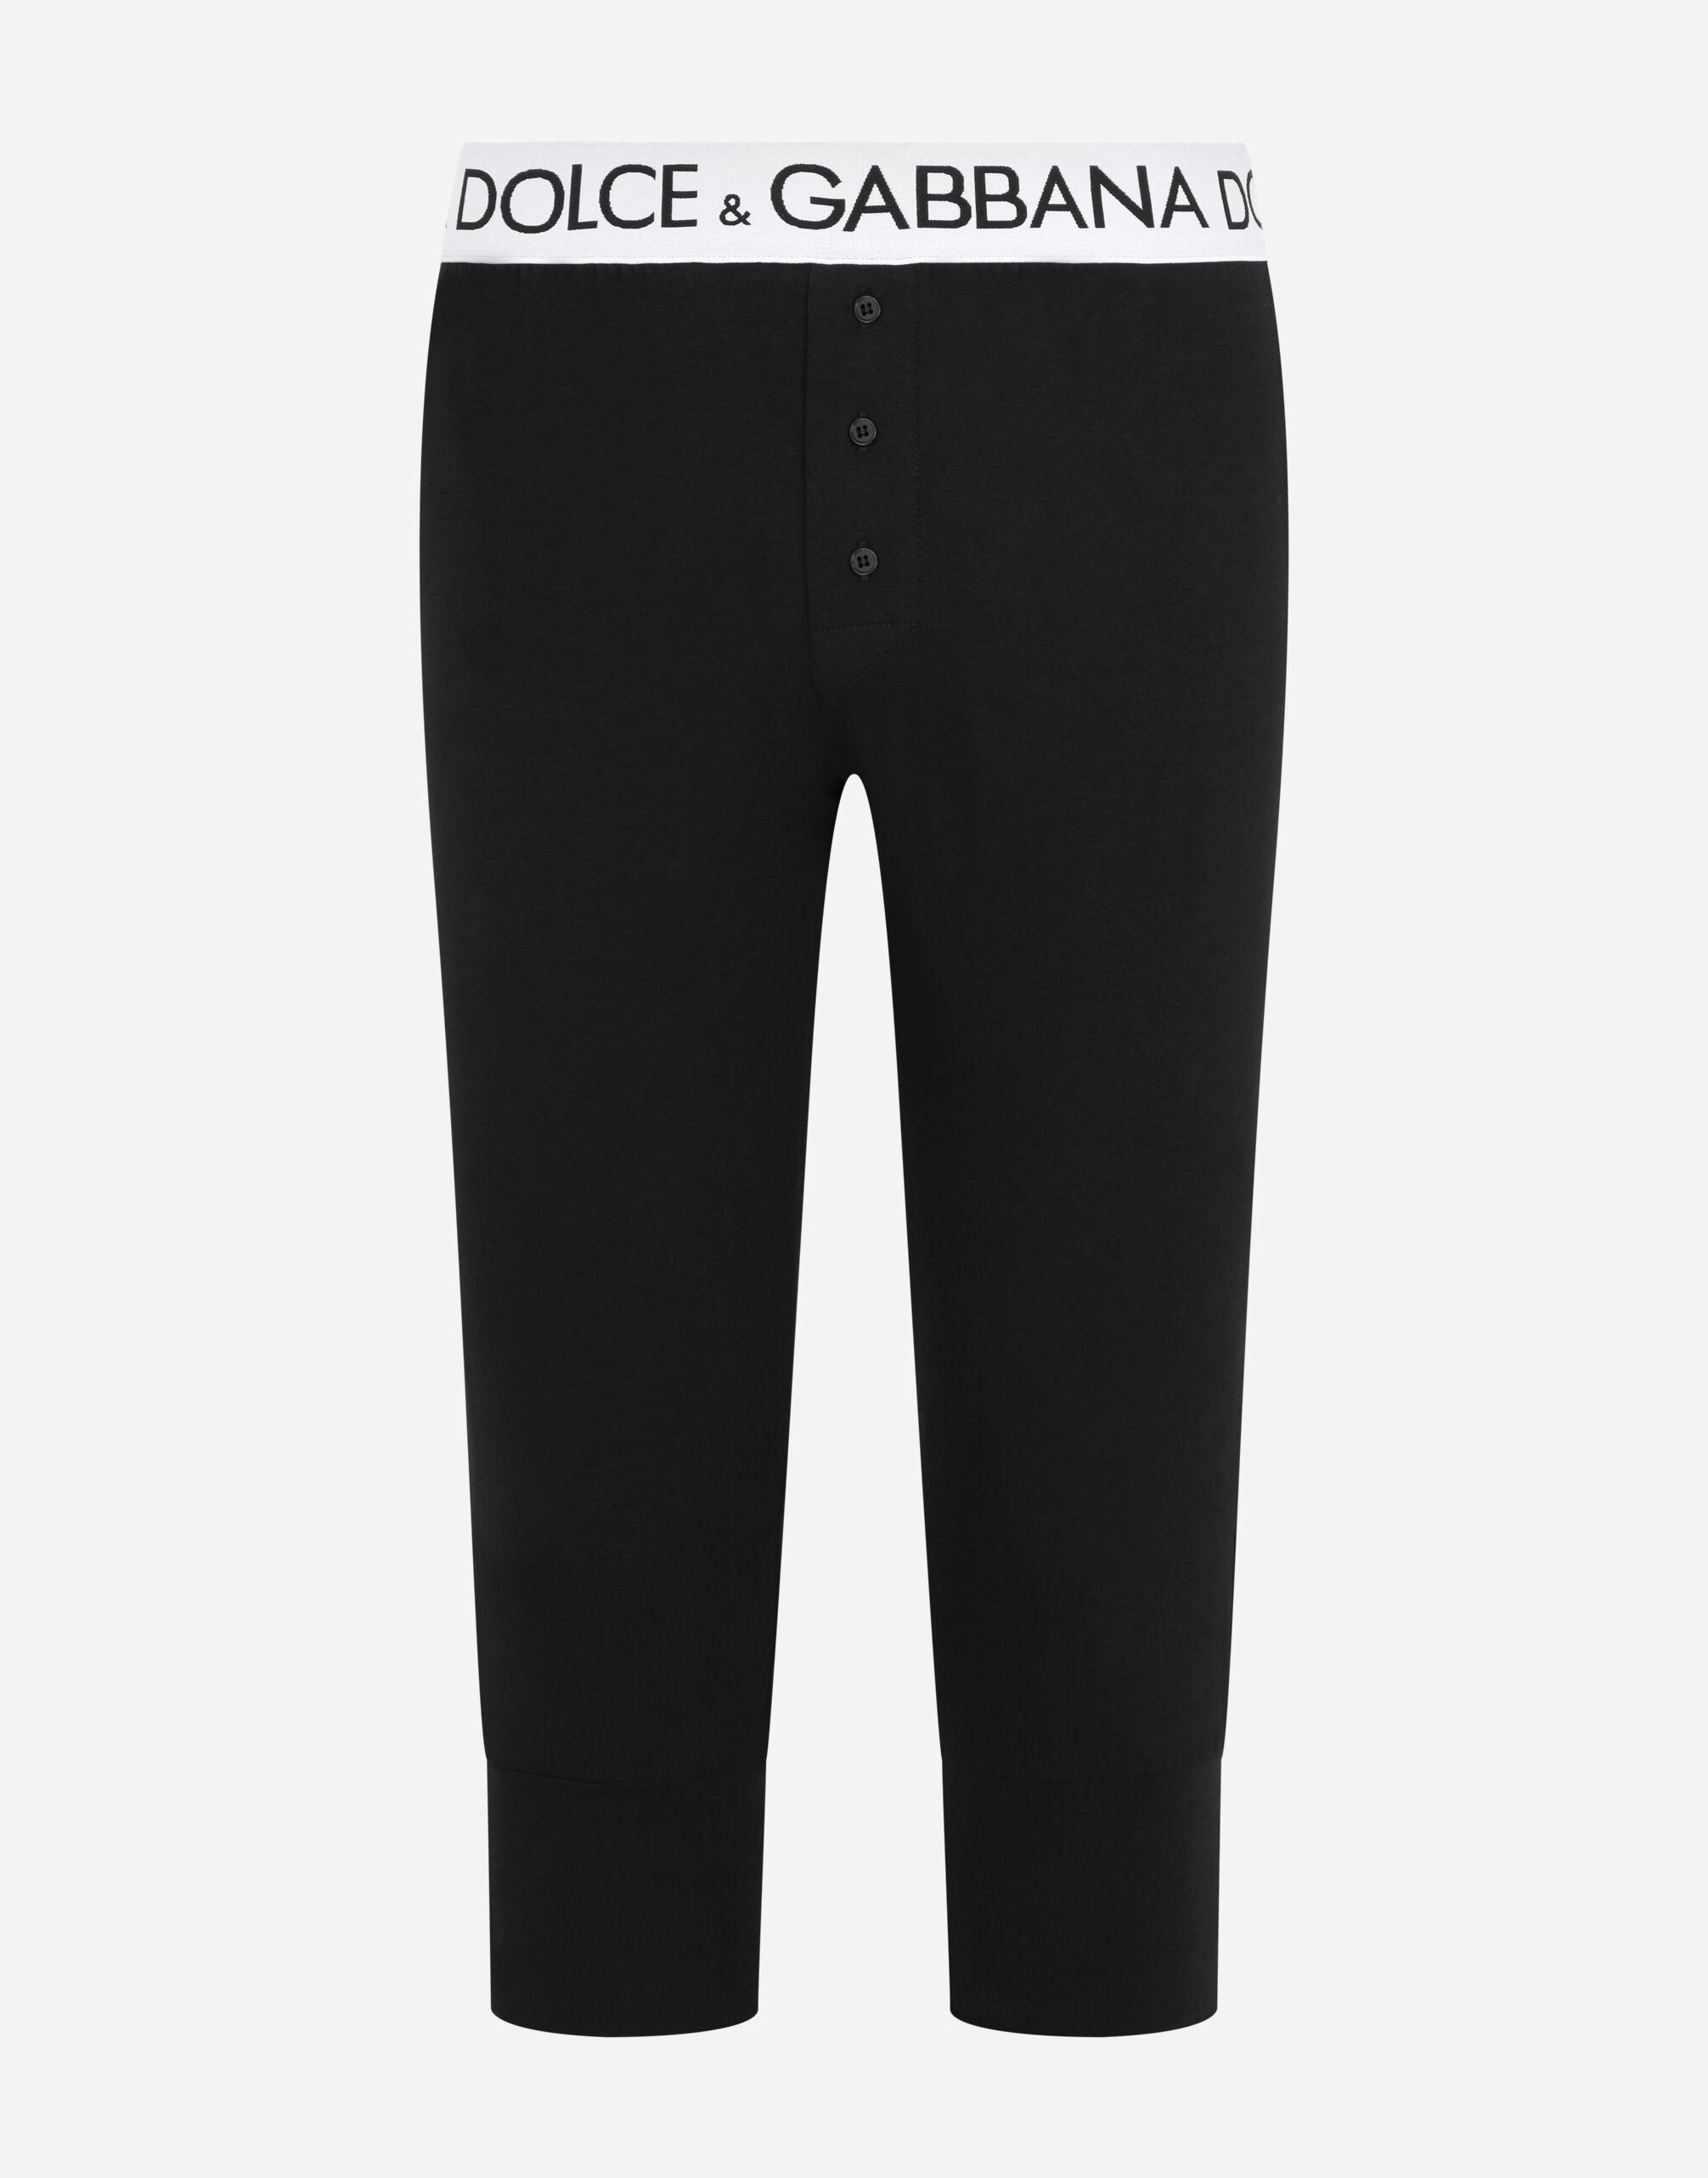 Dolce & Gabbana Two-way stretch cotton leggings Black M4C25TFU5GK